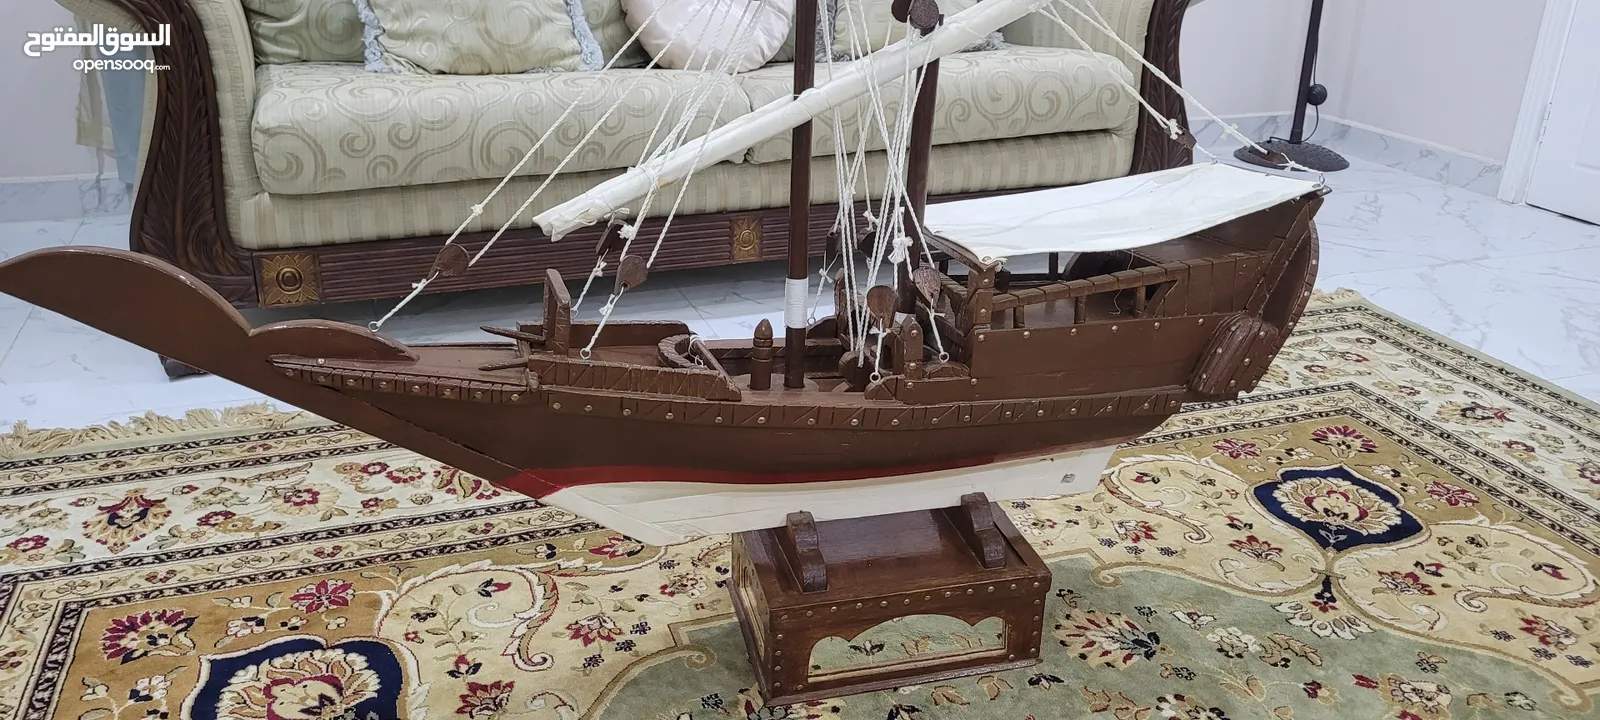 سفينة خشبية من التراث العماني